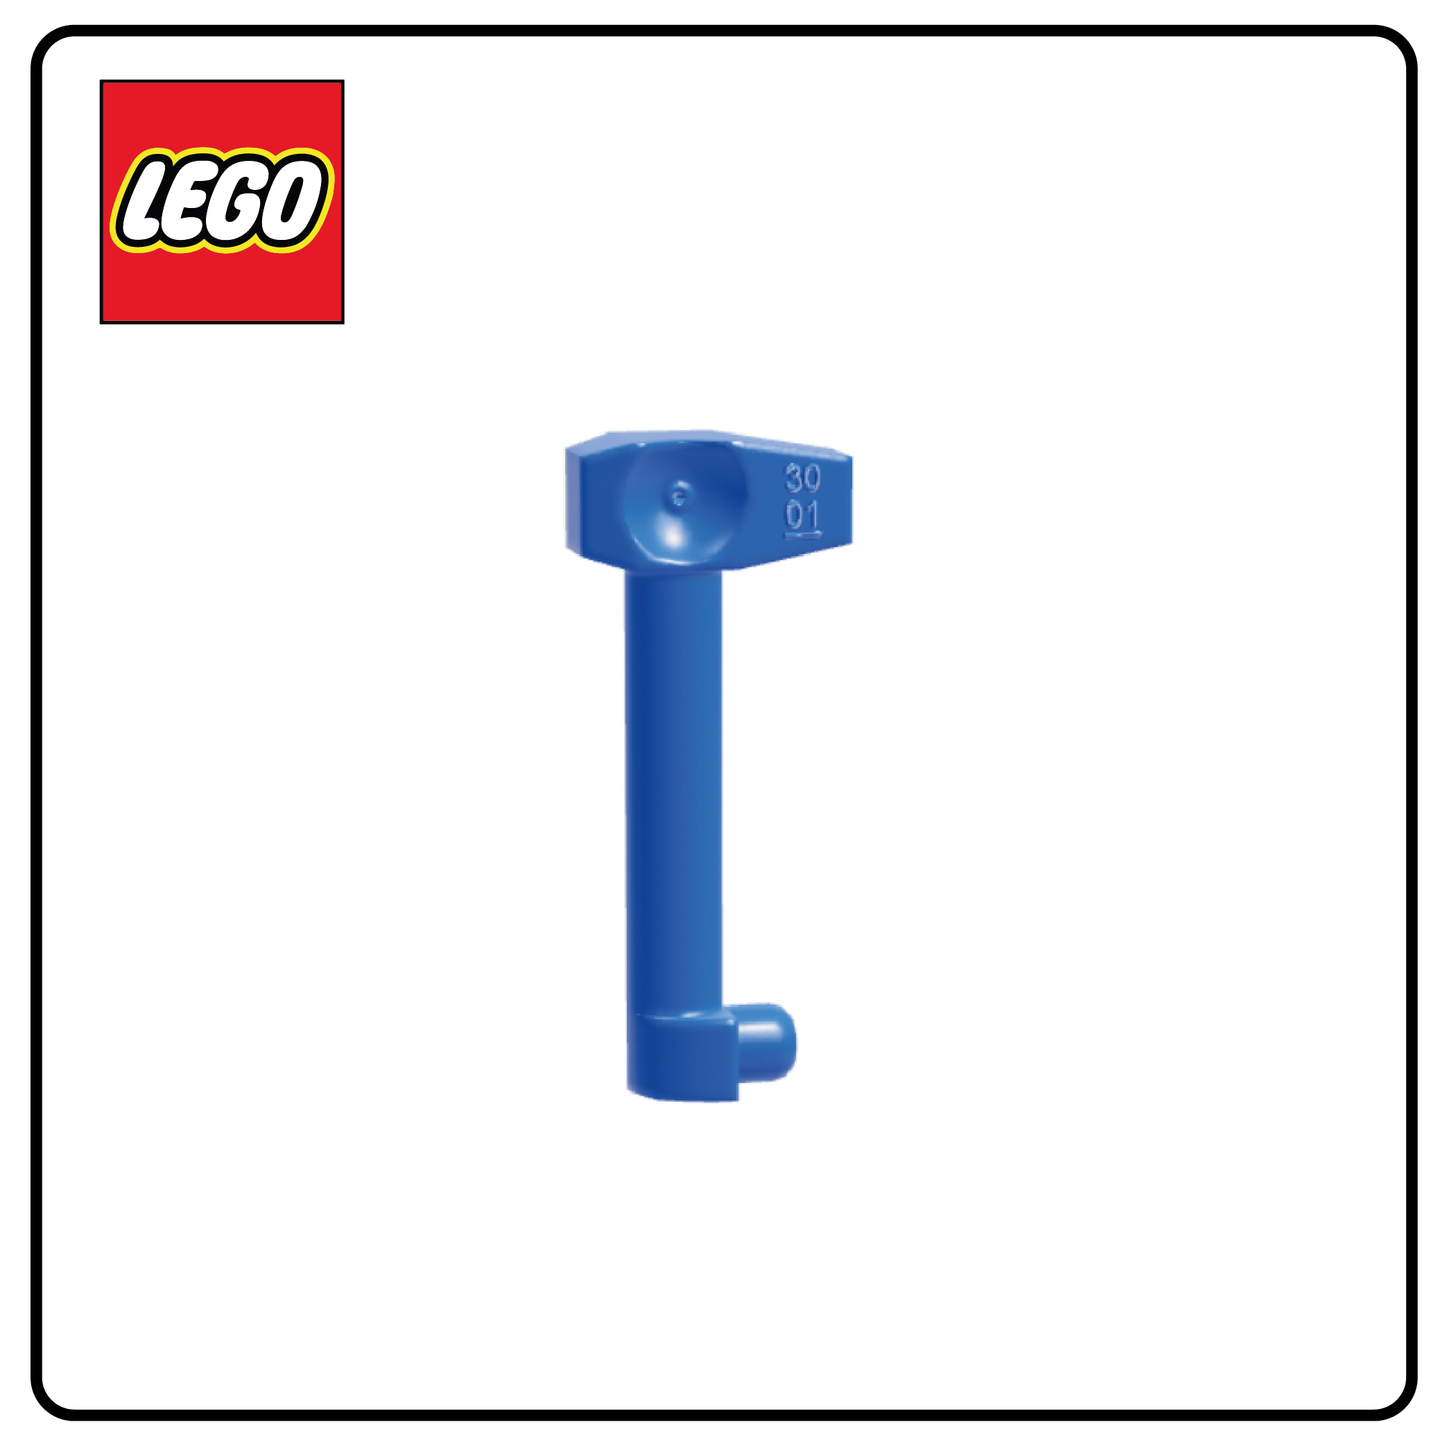 Telémetro de partes del cuerpo LEGO®